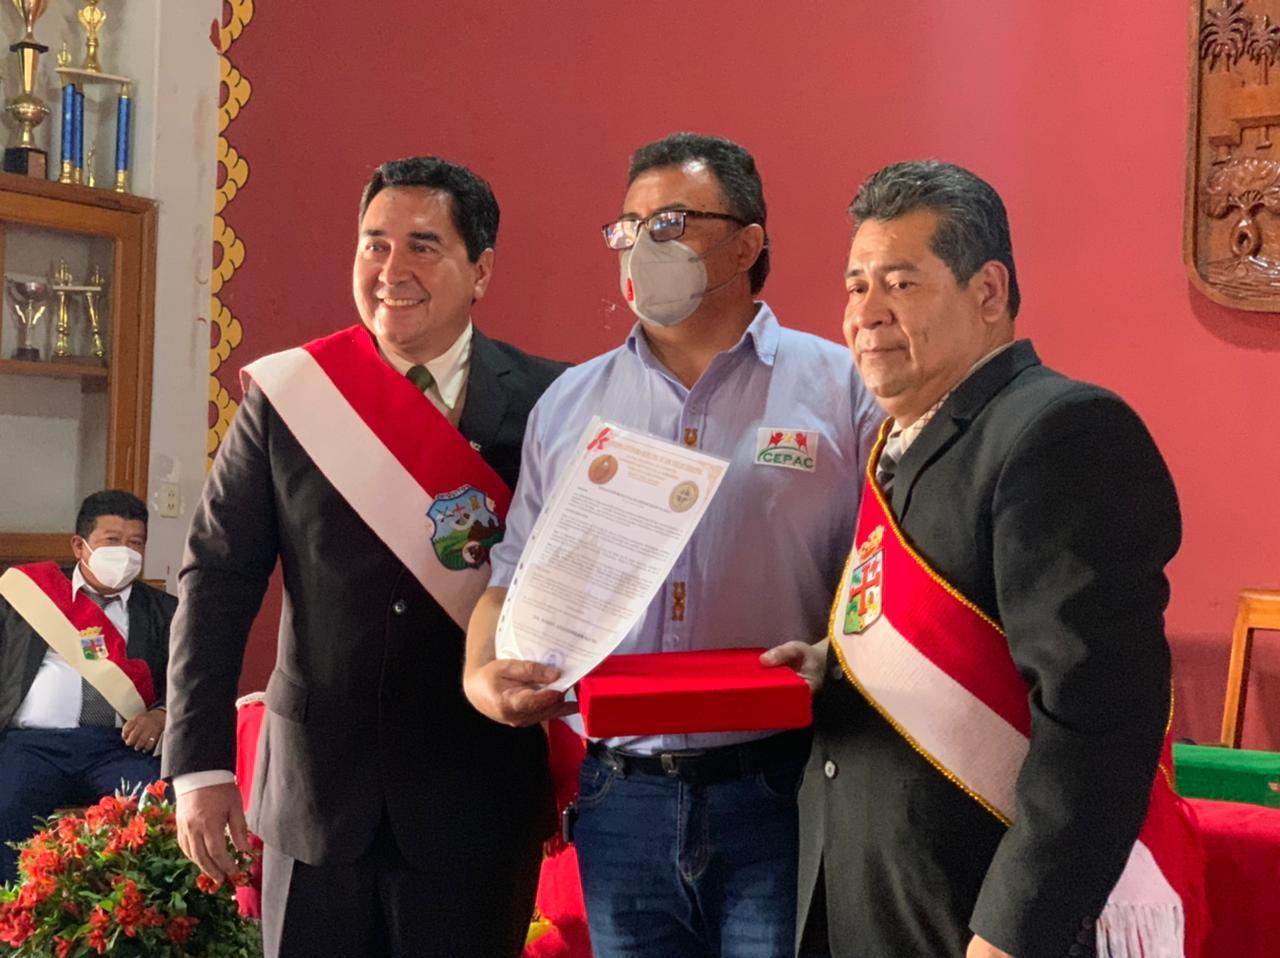 Gobierno Municipal de San José de Chiquitos hace entrega de la máxima distinción al director de la ONG CEPAC